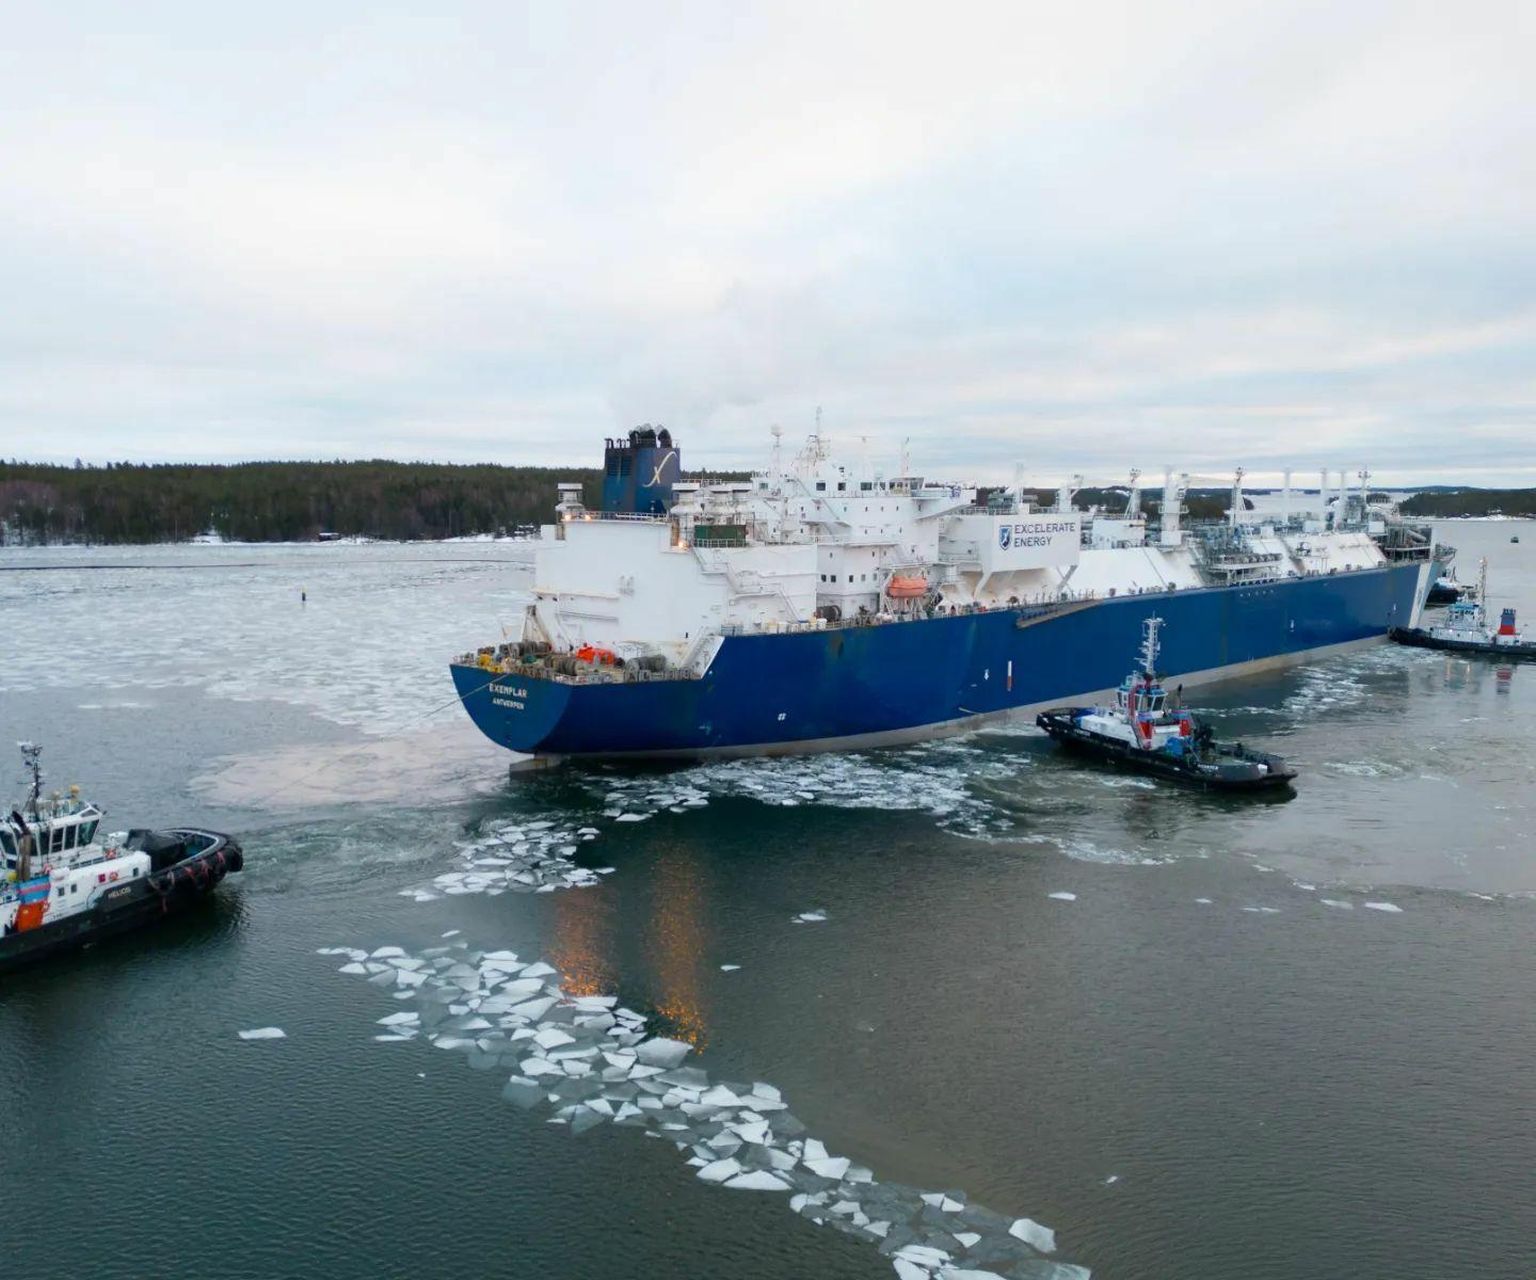 Soome Inkoo sadamasse detsembris jõudnud LNG-terminal Exemplar seisab samuti peaaegu jõude. Seni on vaid Eesti Gaas sinna oma tarneid broneerinud.